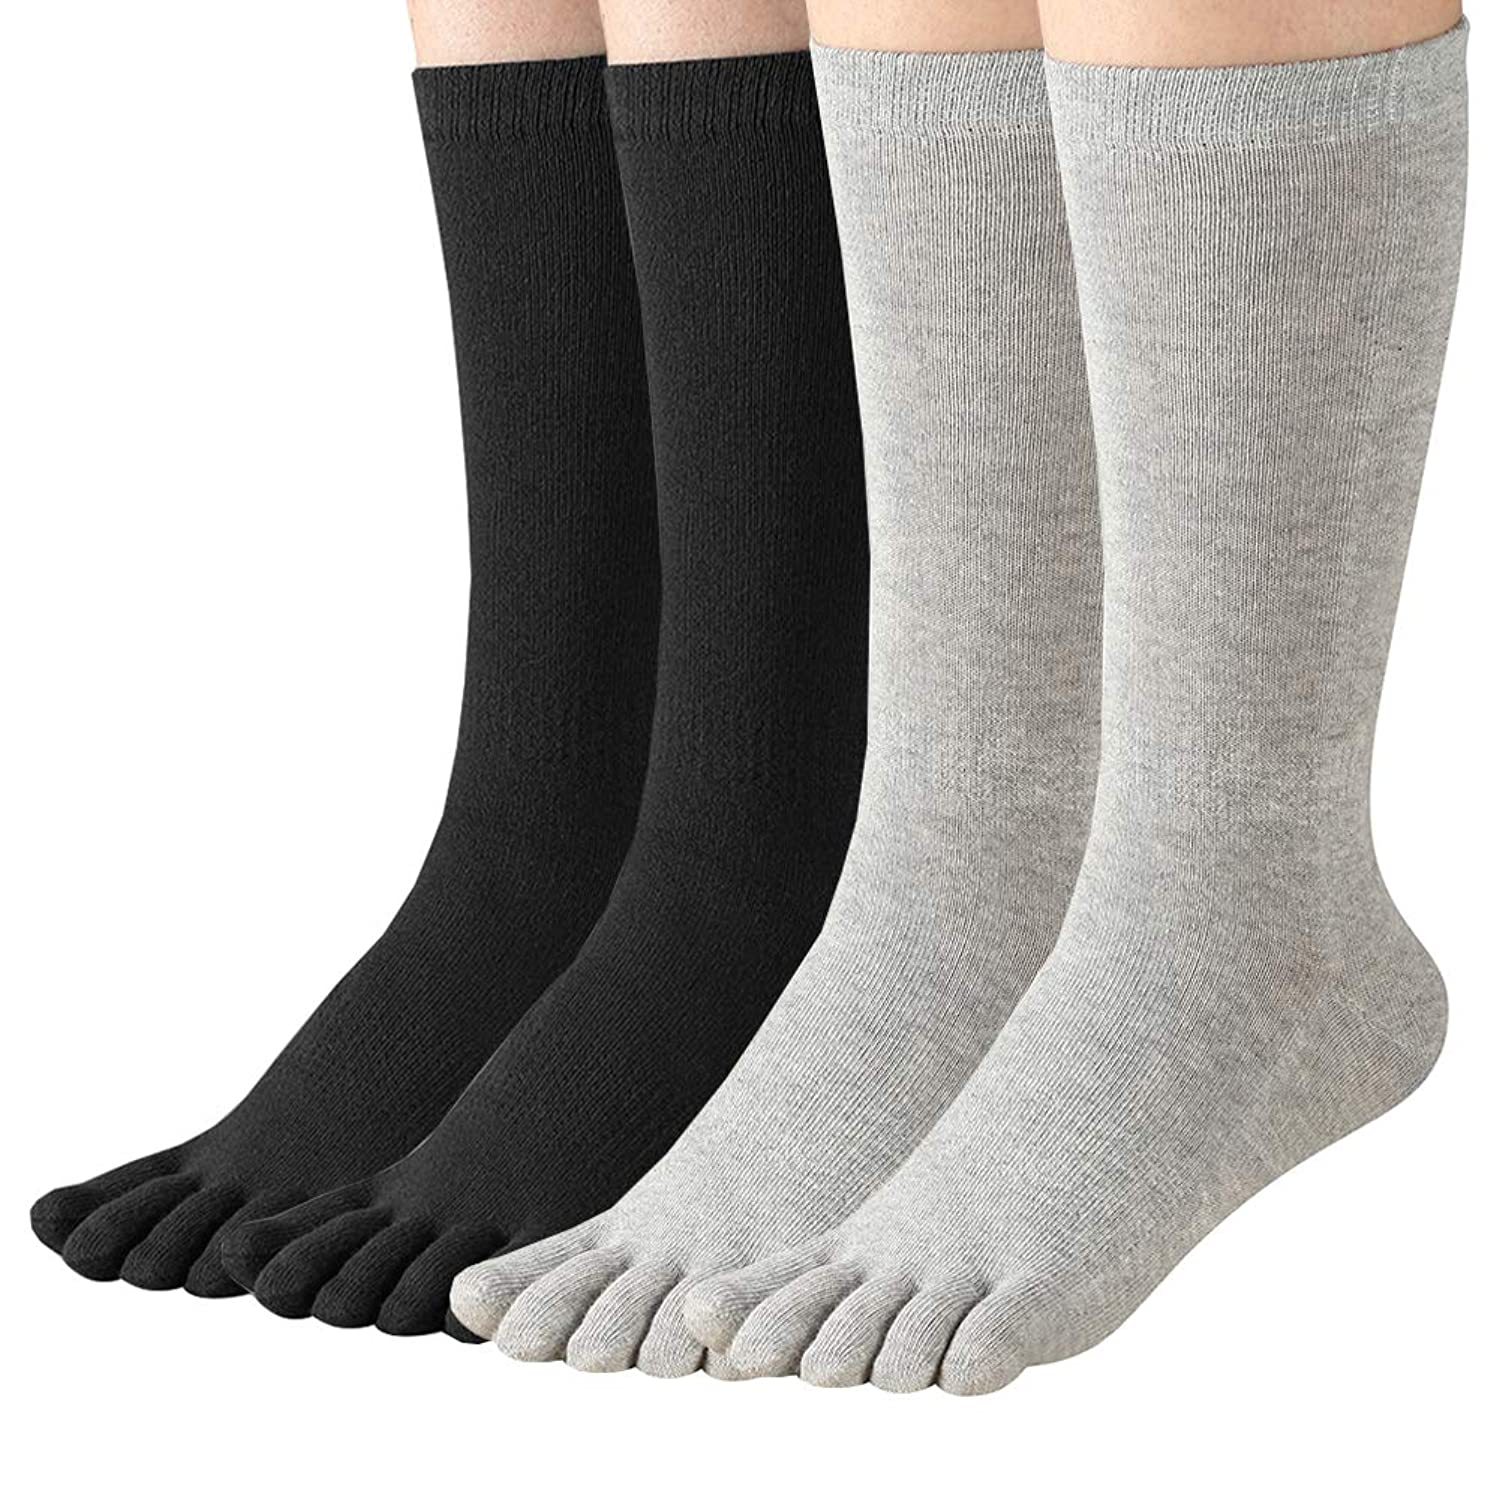 Women'S Toe Socks For Running Five Finger Socks With Cotton Athletic 4